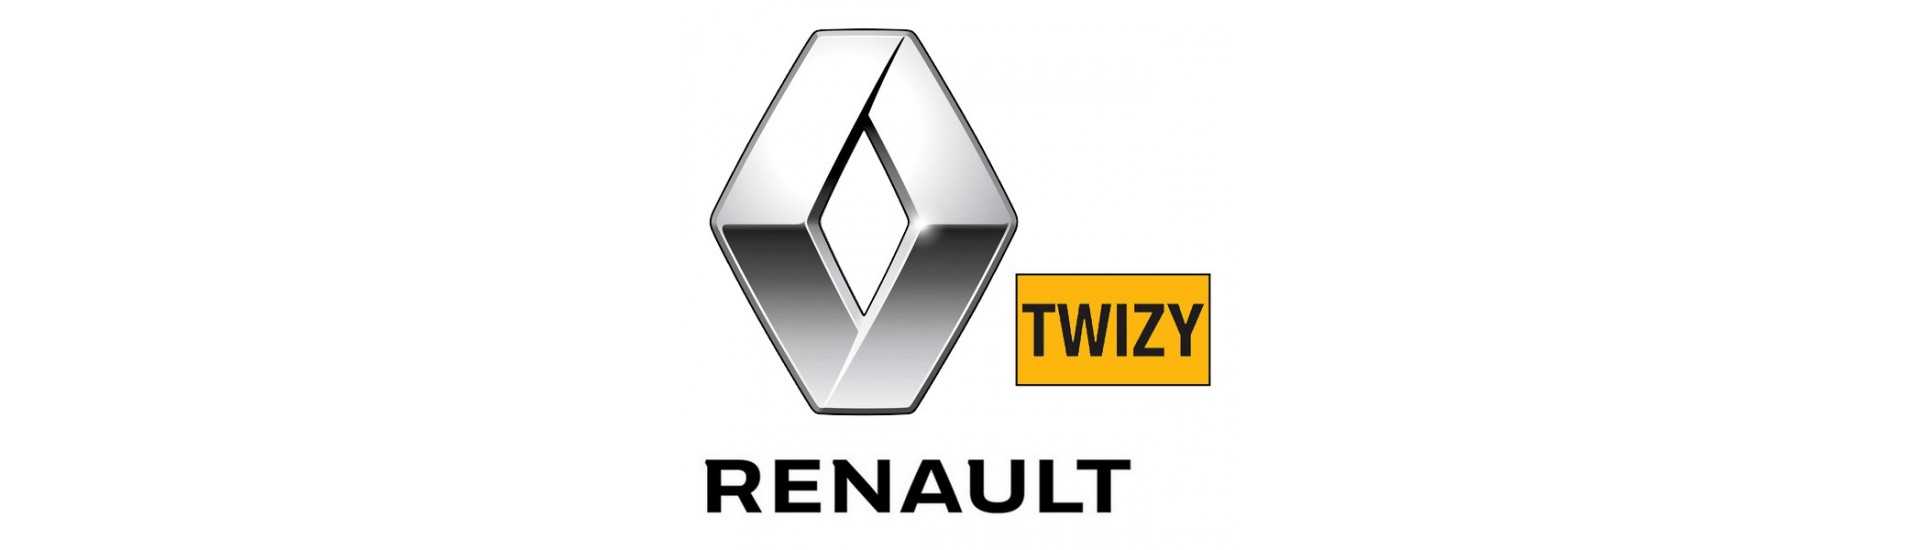 Manómetro al mejor precio del coche sin permiso Renault Twizy